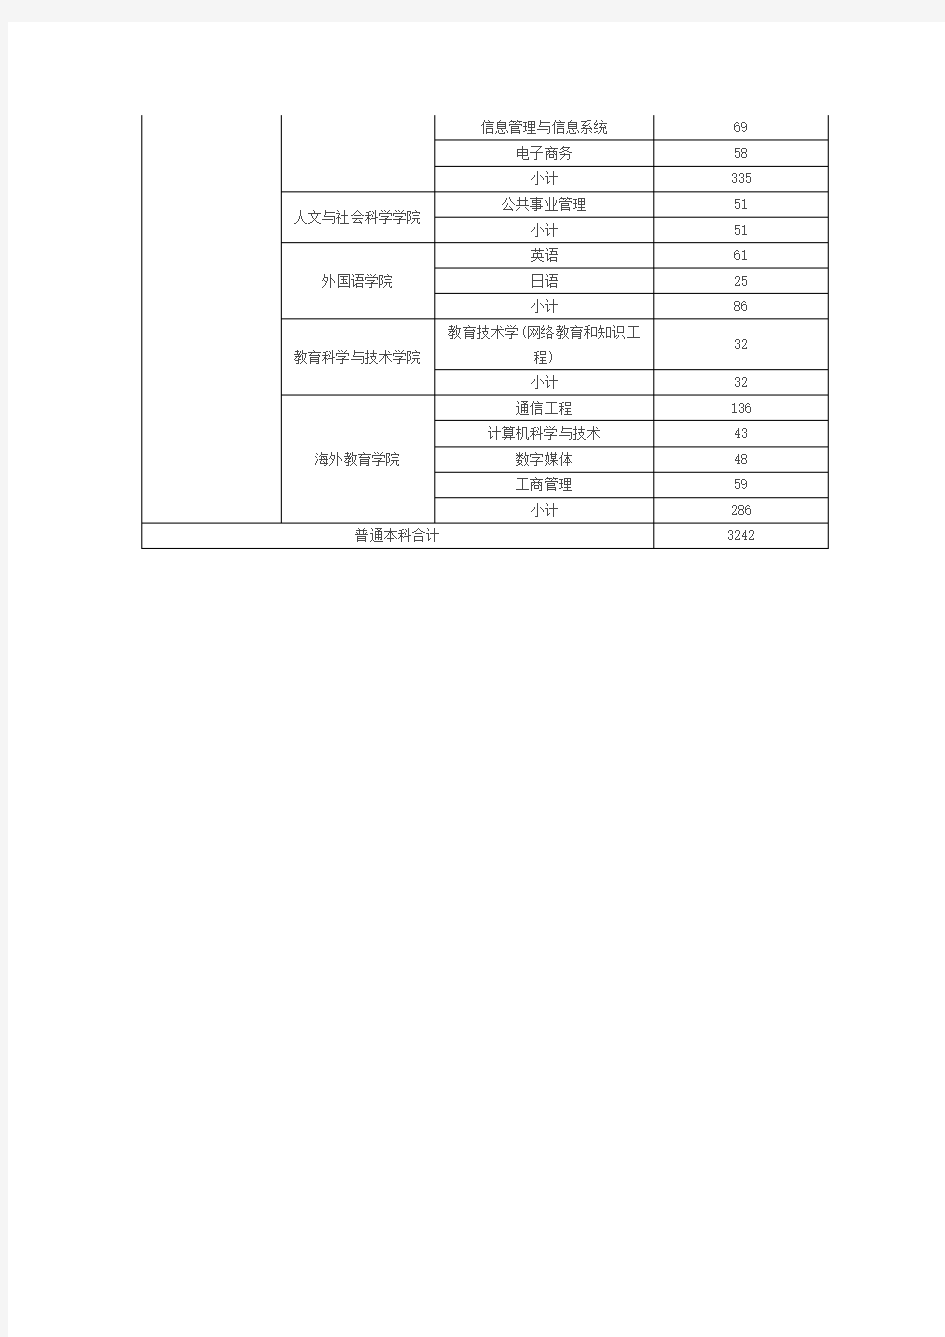 南京邮电大学2013届本科毕业生生源信息统计表